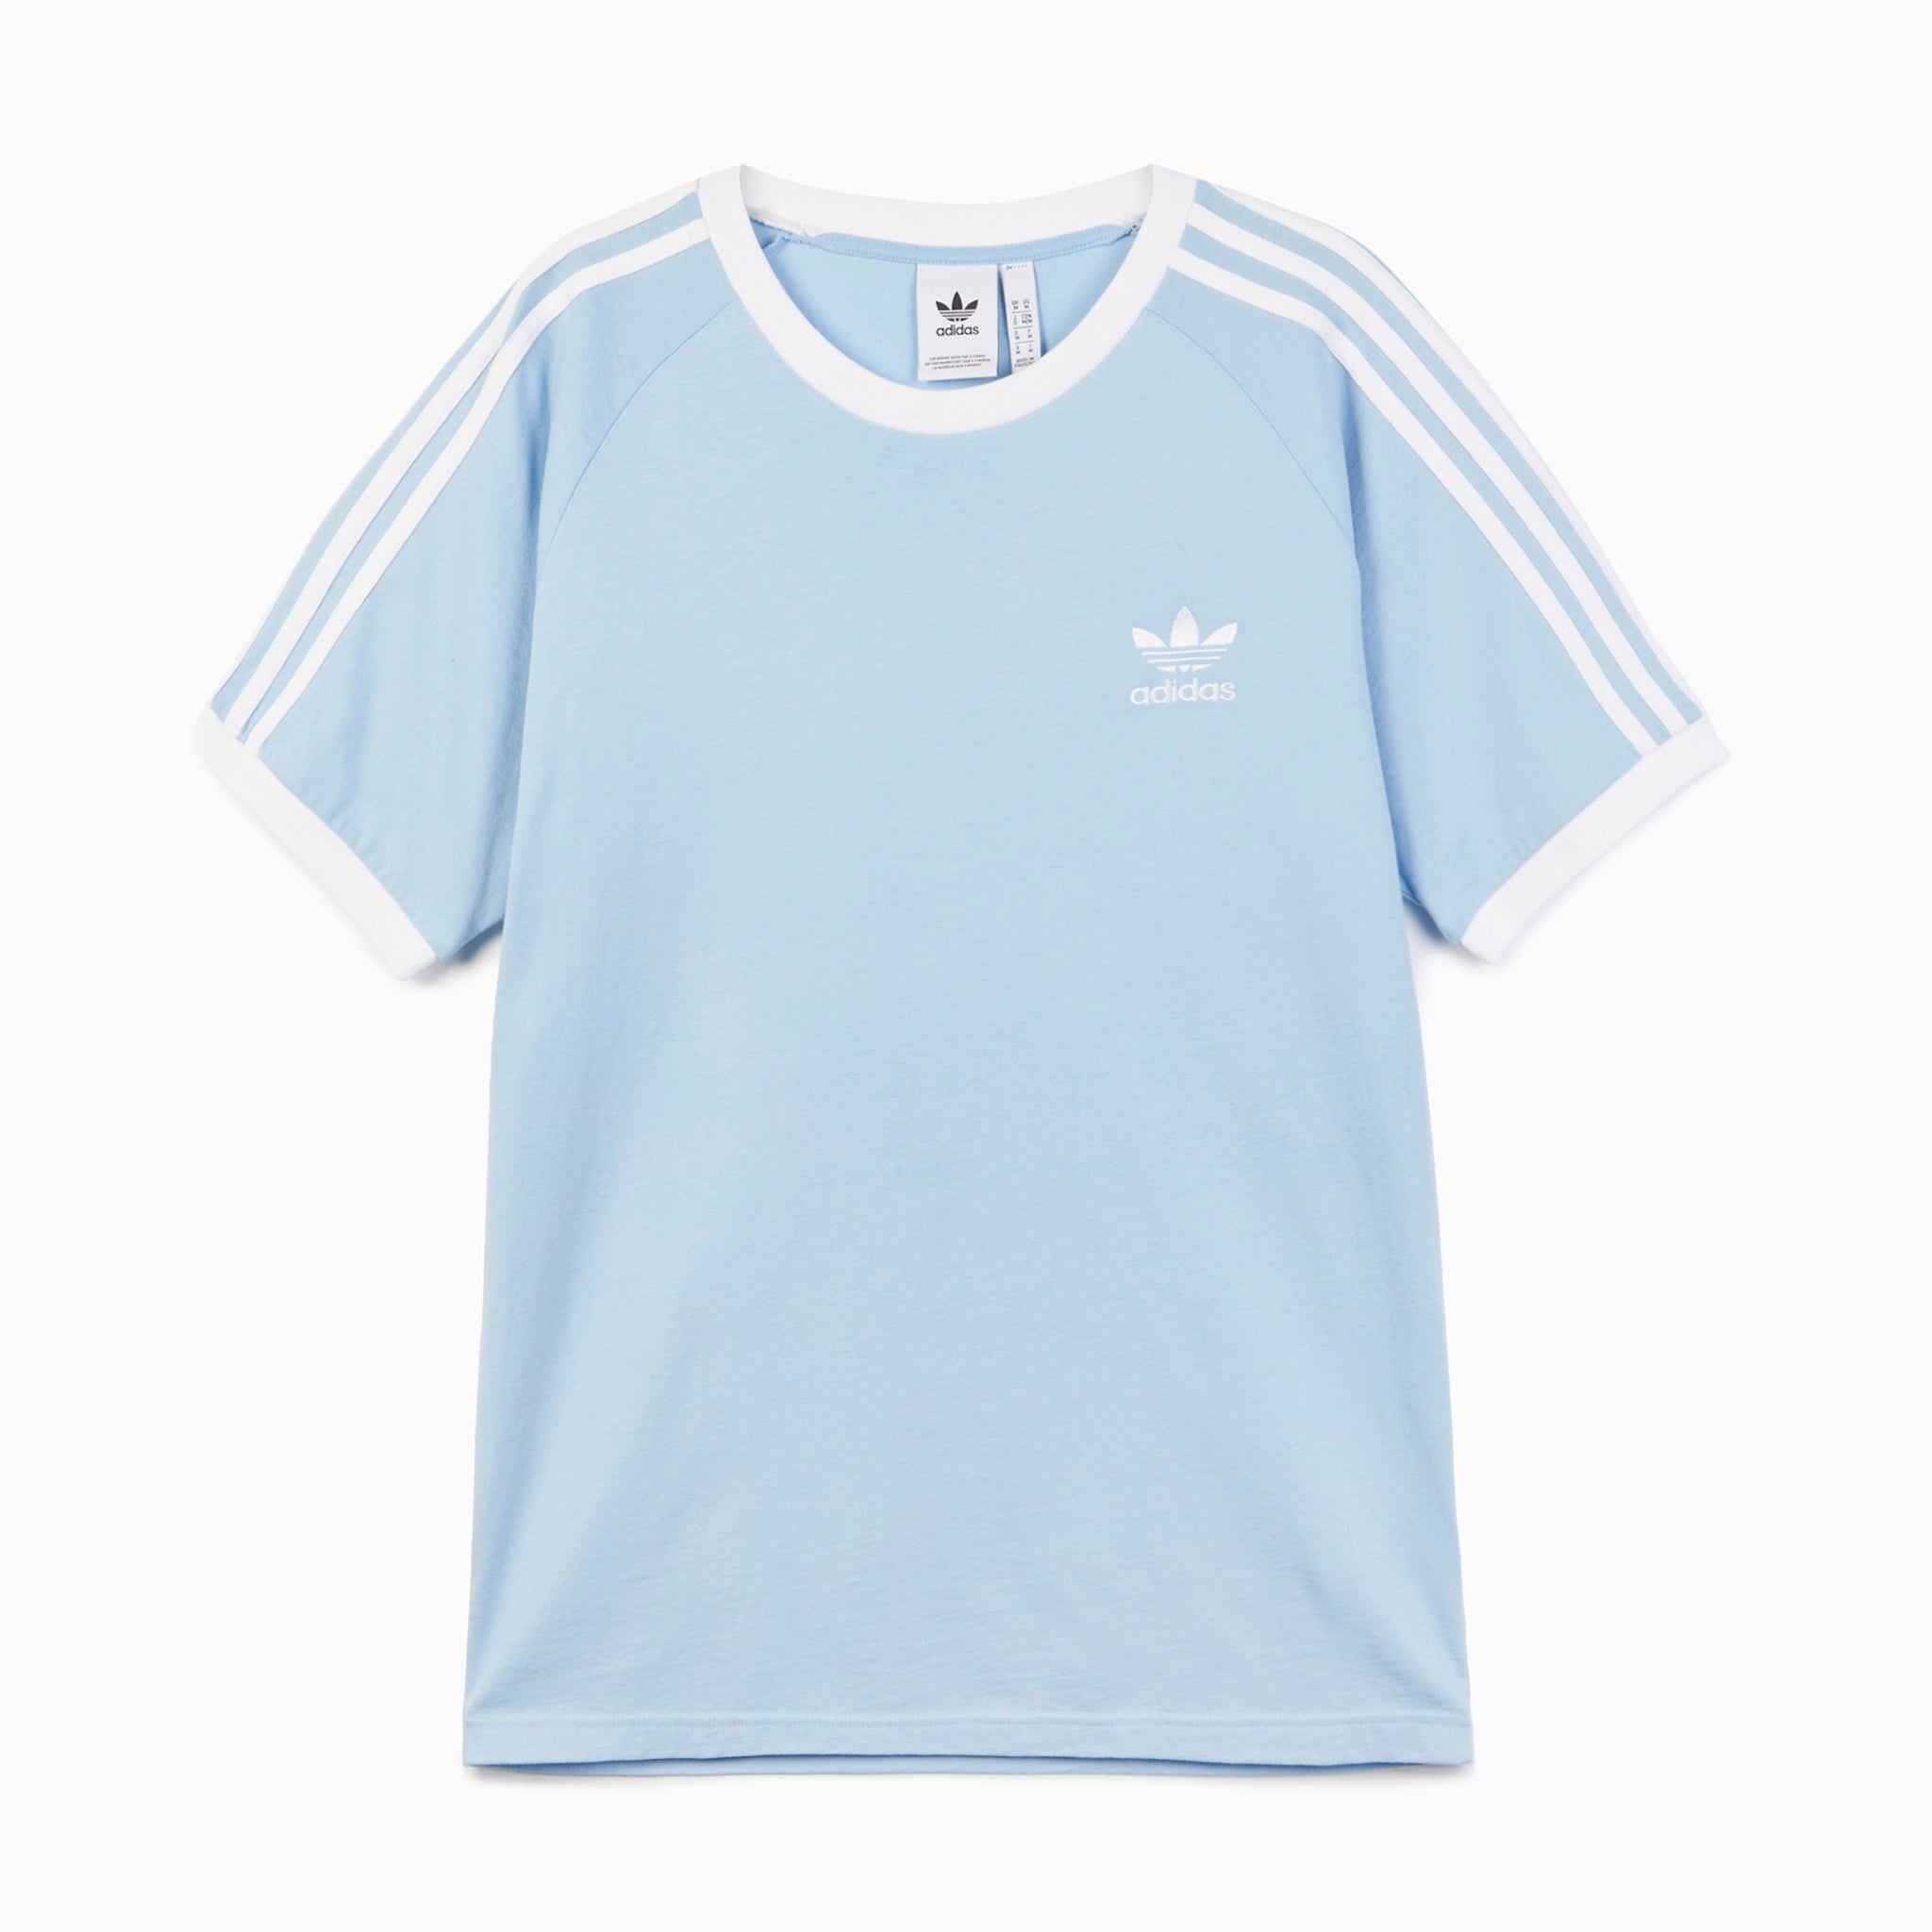 Adidas 3 Stripe T-Shirt - Clear Sky | The Original Factory Shop